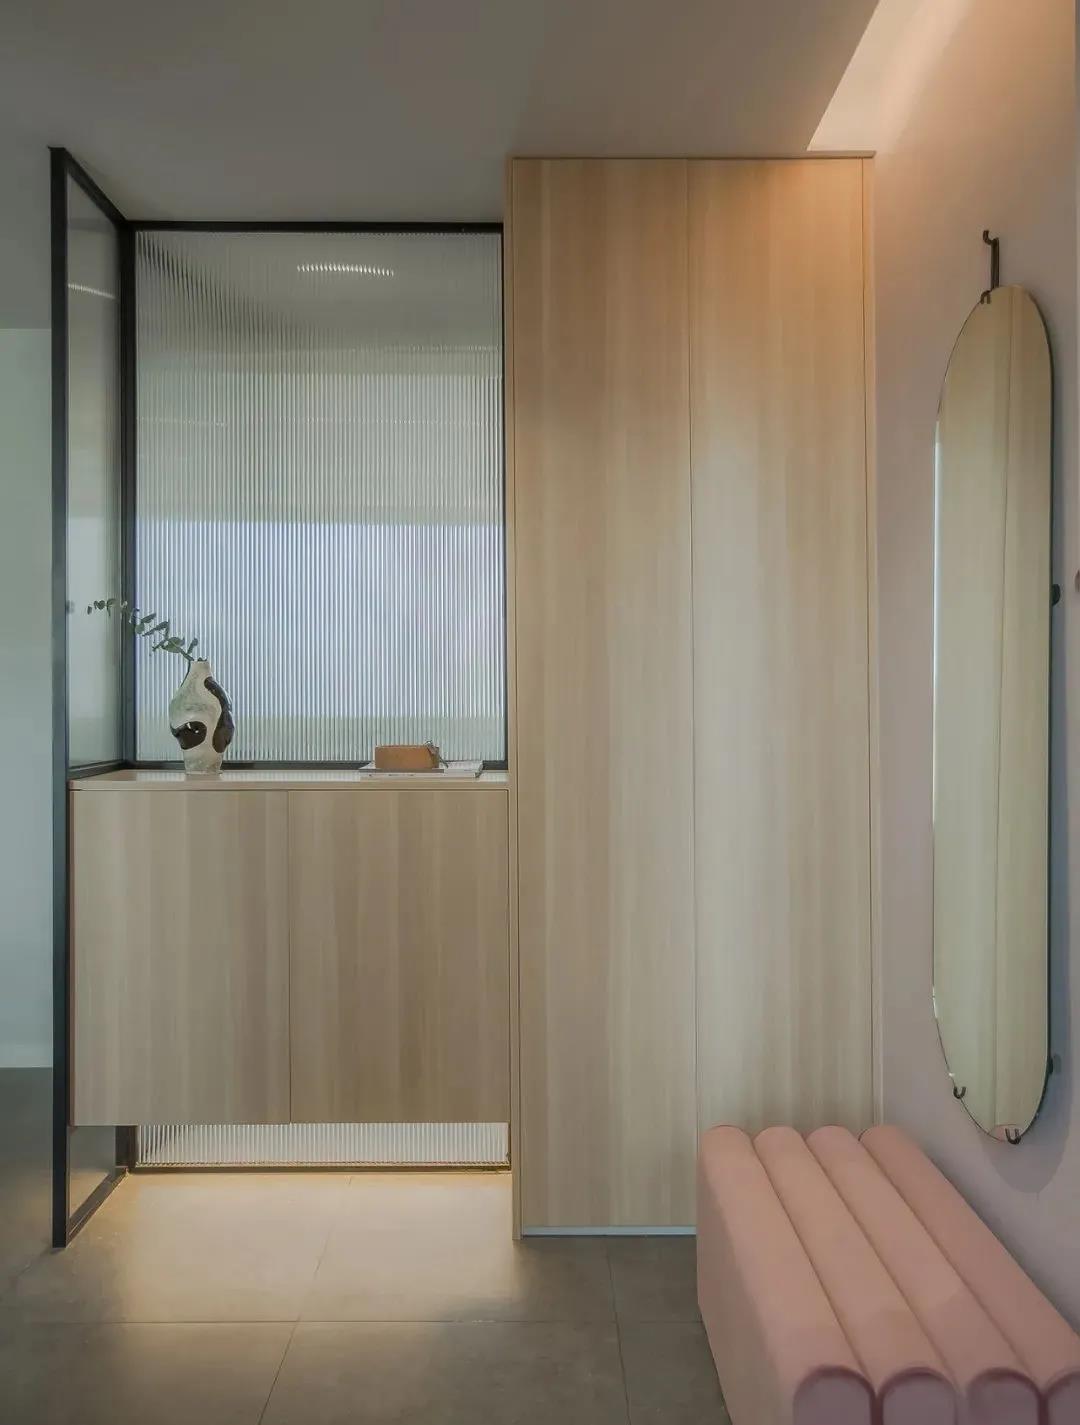 玄关设计的十分淡雅，玄关柜采用高低错落的木色设计，绒质座椅上方放置穿衣镜，实用性高。